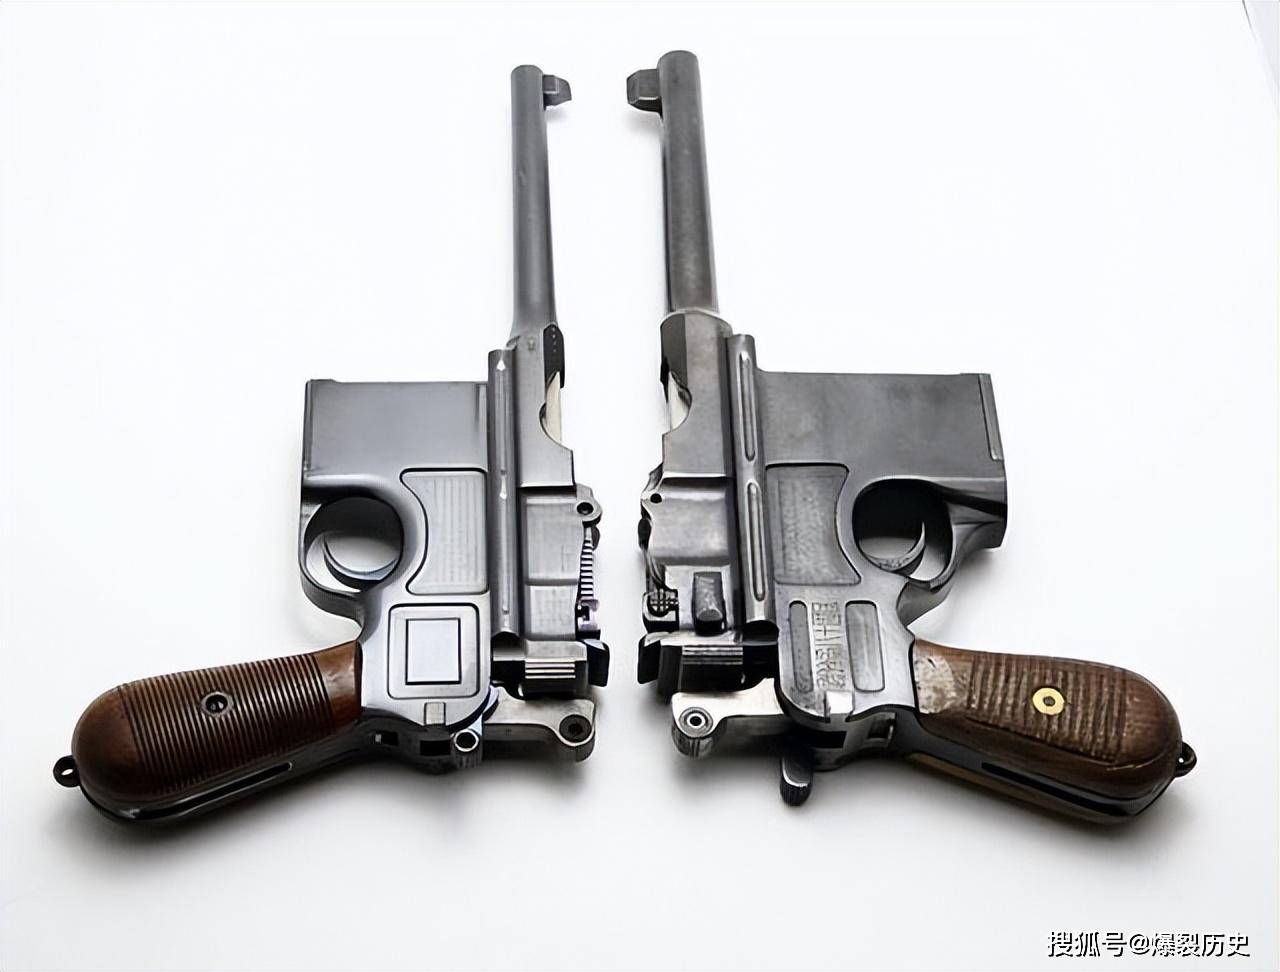 民国时期中国仿造的精品枪械,先辈们什么都用了,就是没想过放弃